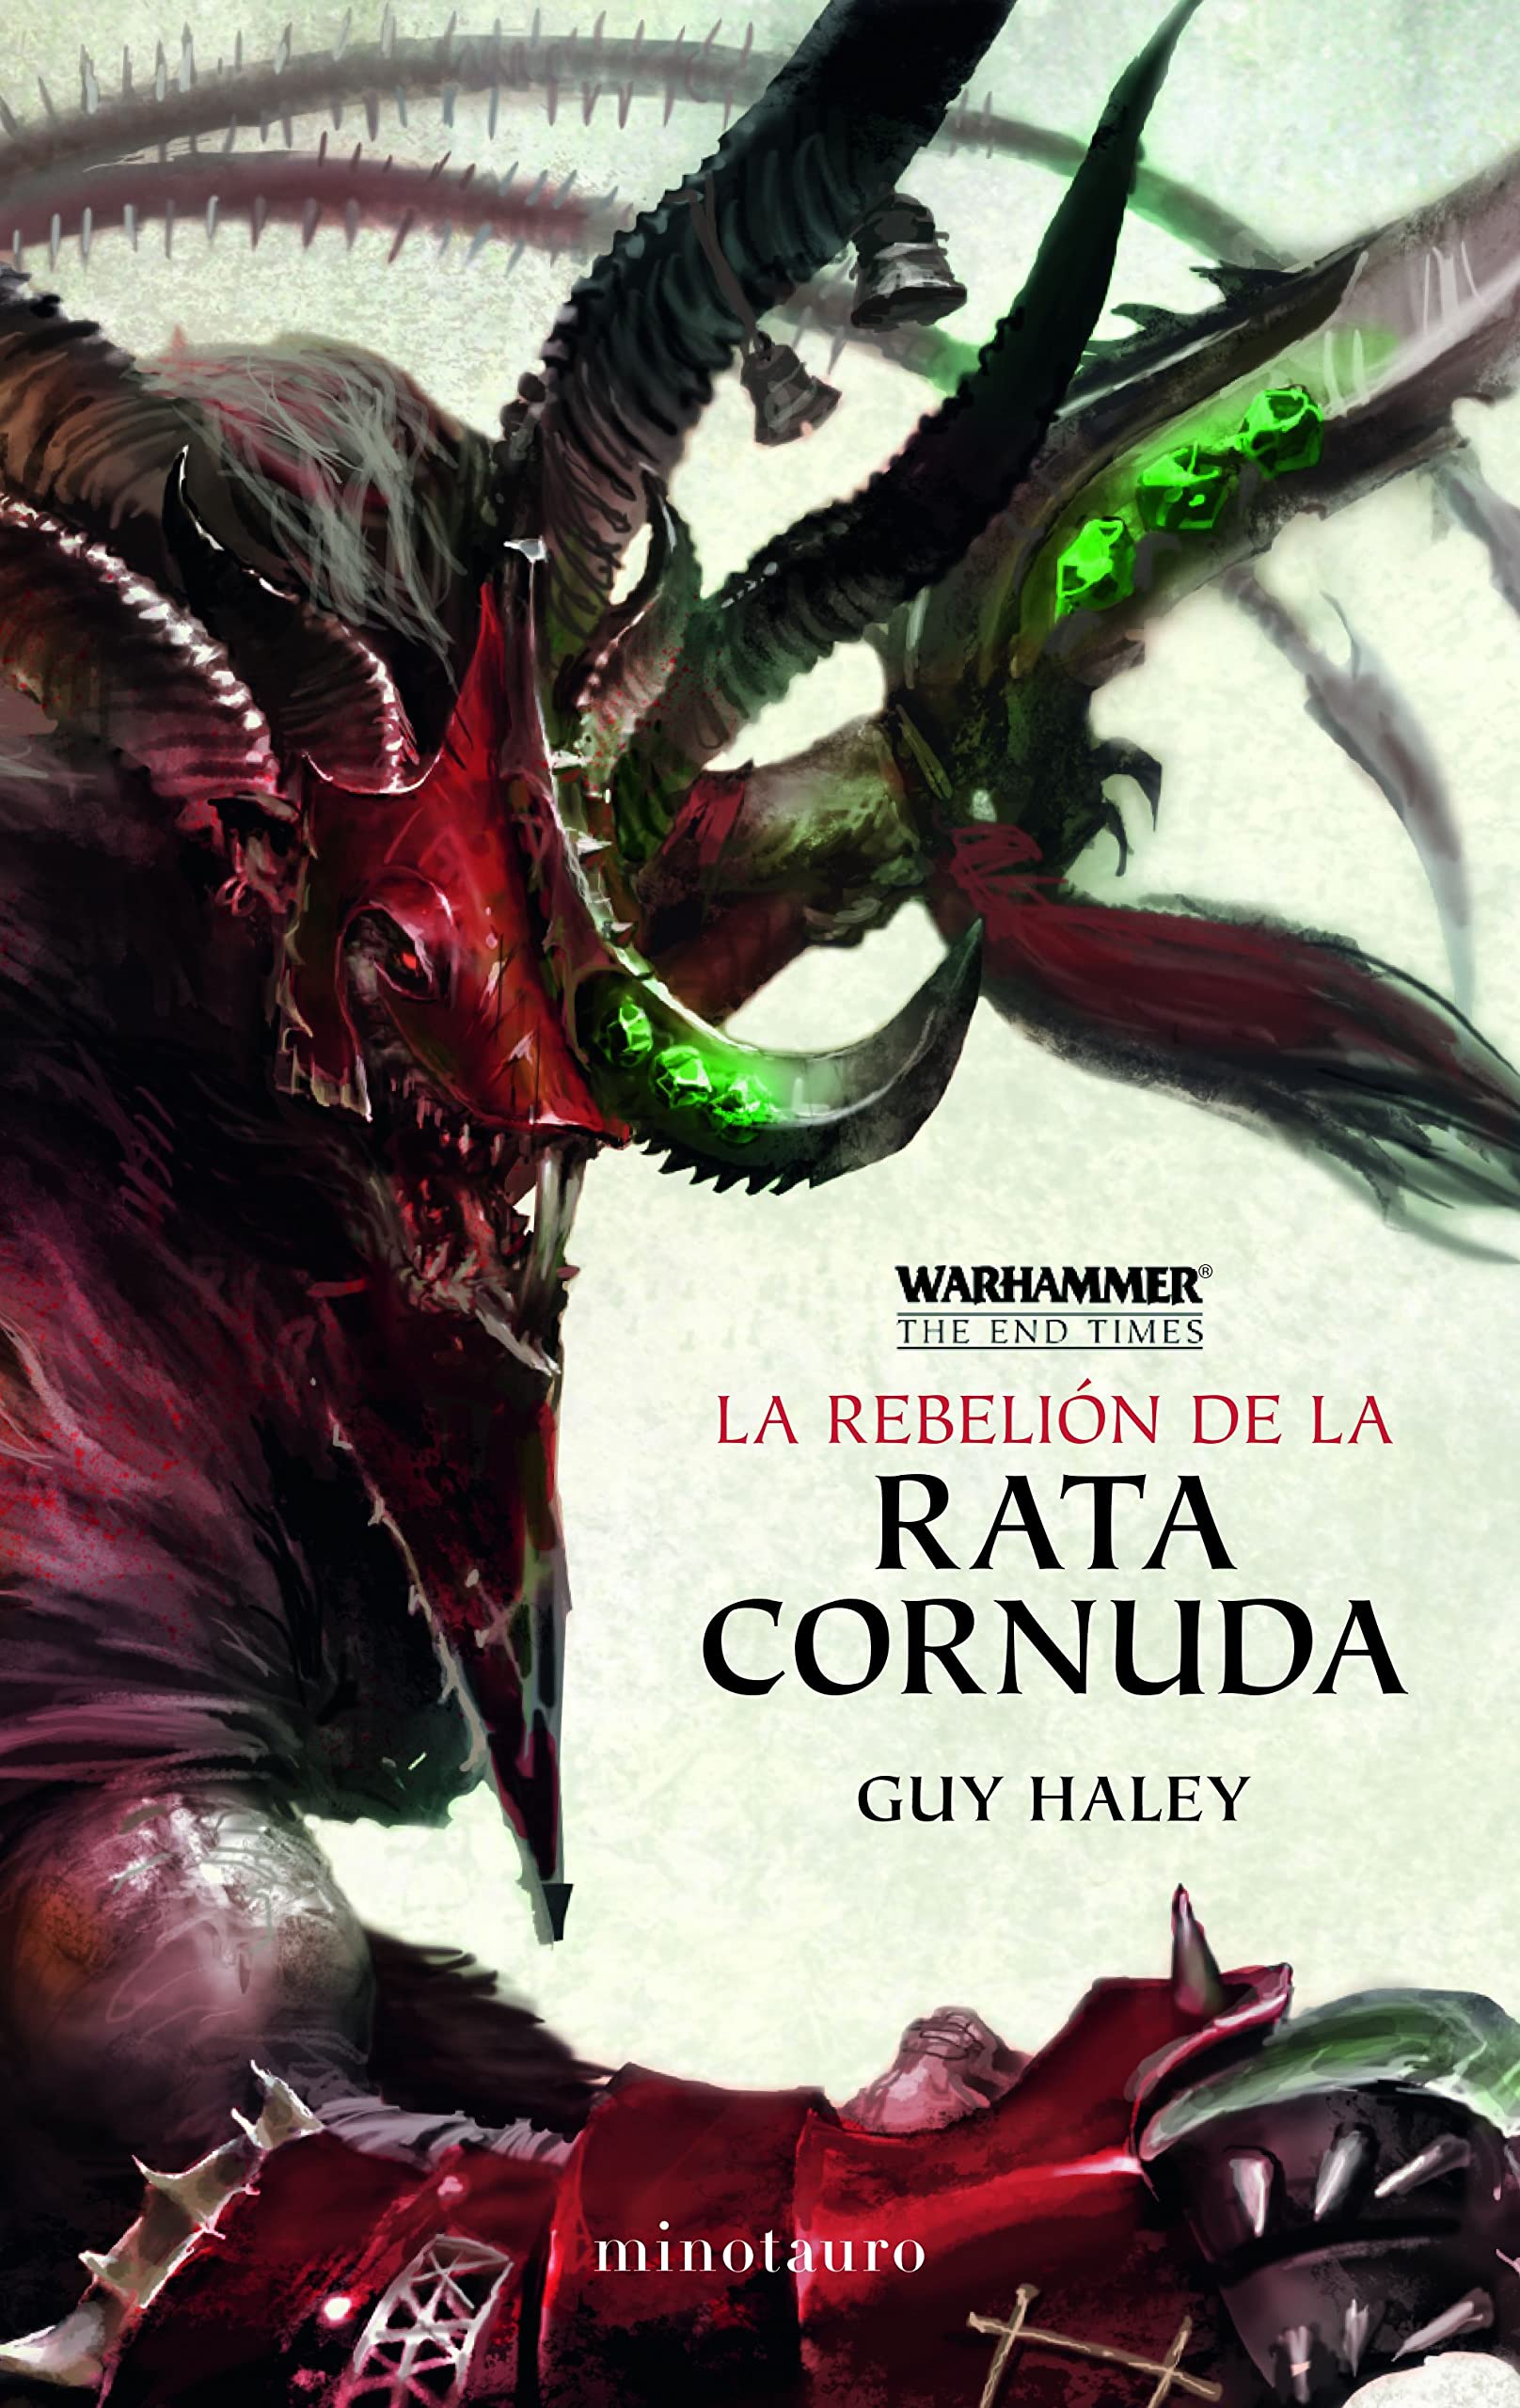 Libro: La Rebelión de la Rata Cornuda - Libro 4 de 5: Fin de los Tiempos por Guy Haley